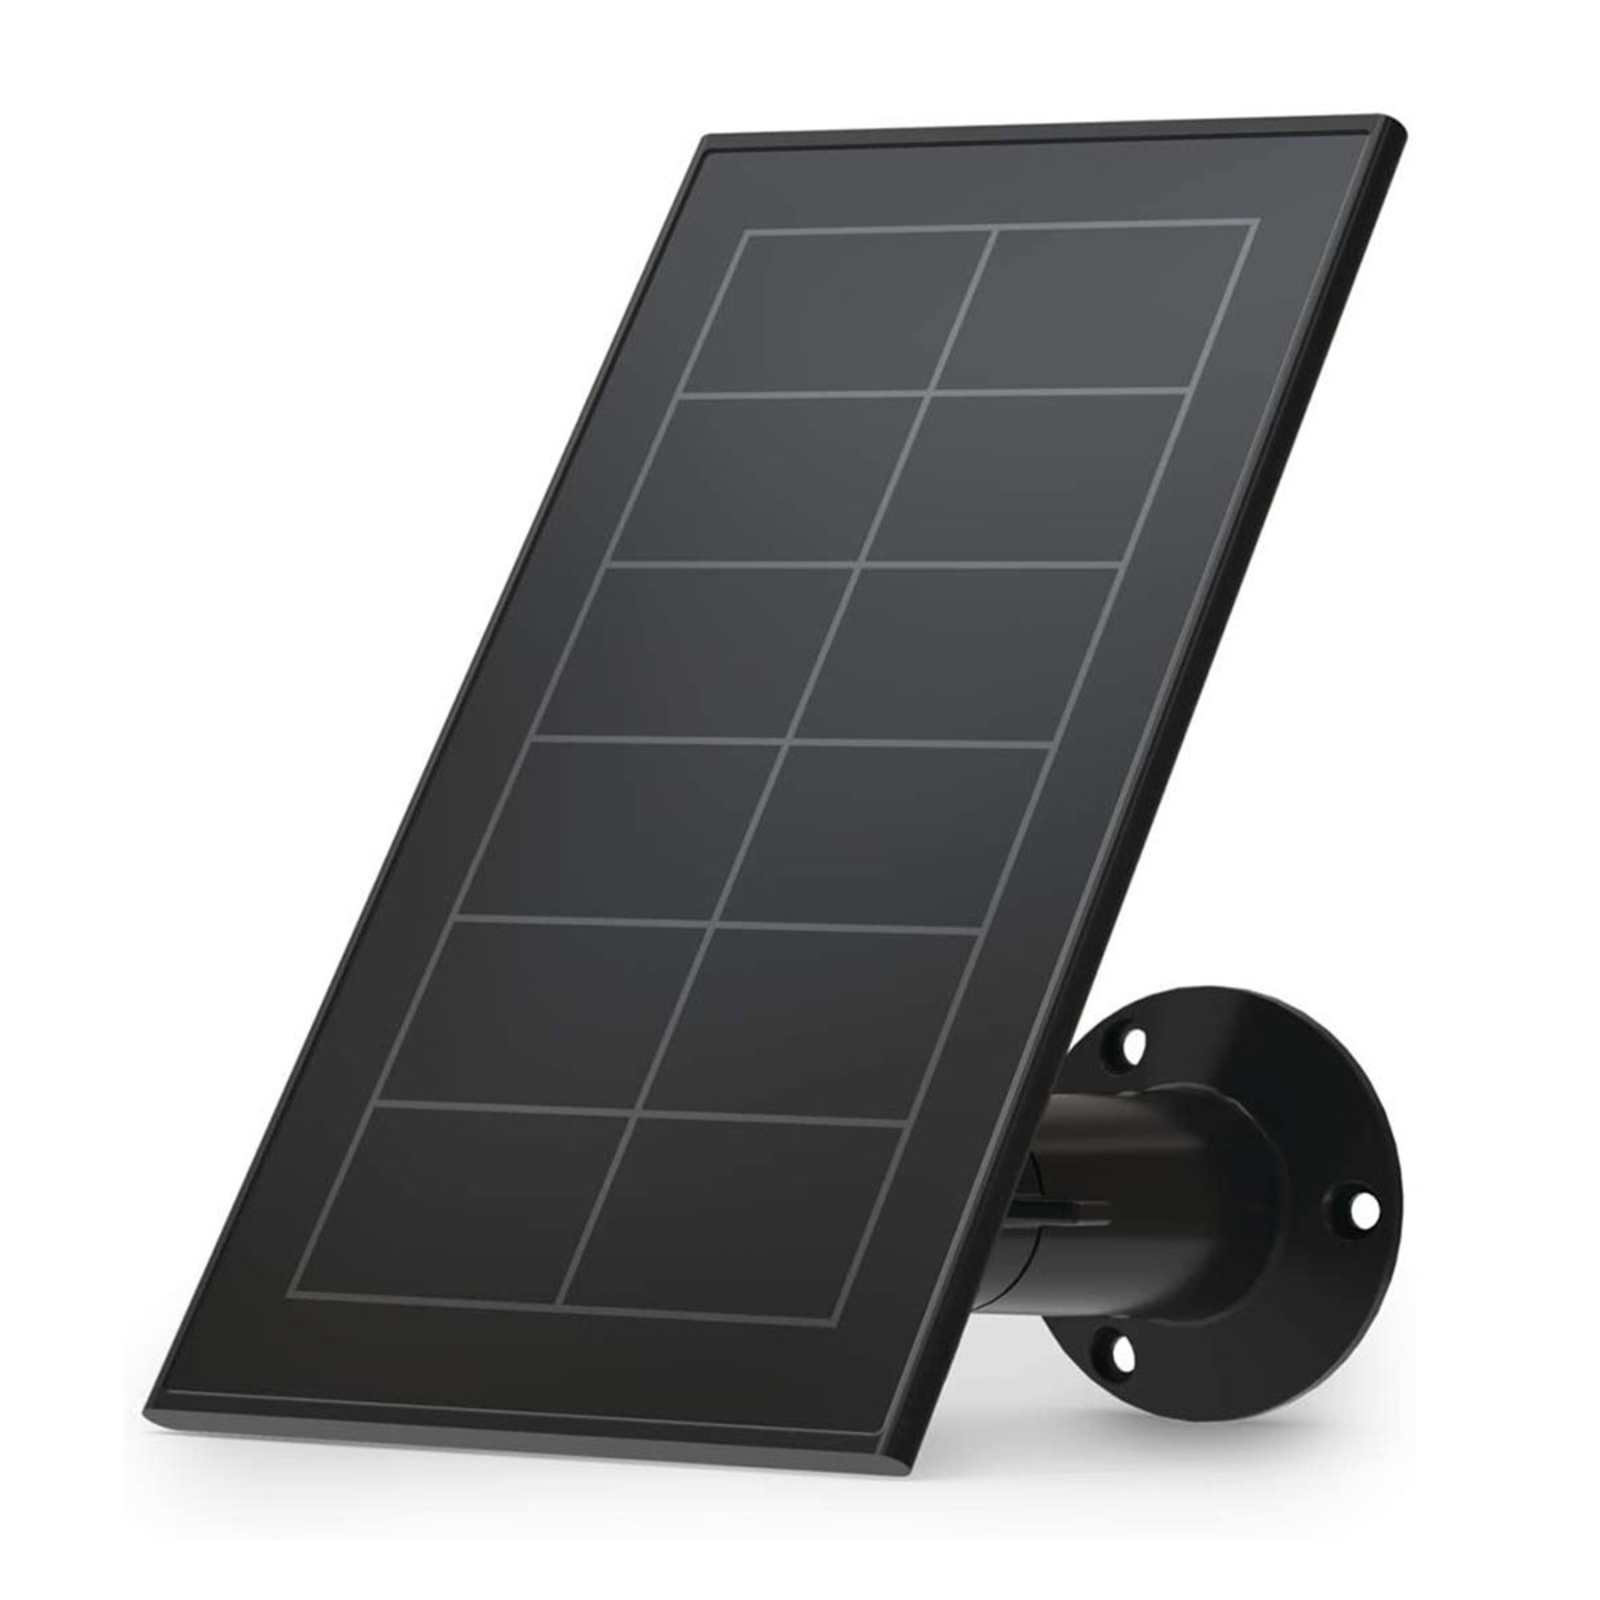 Arlo panneau solaire pour caméra Essential, noir